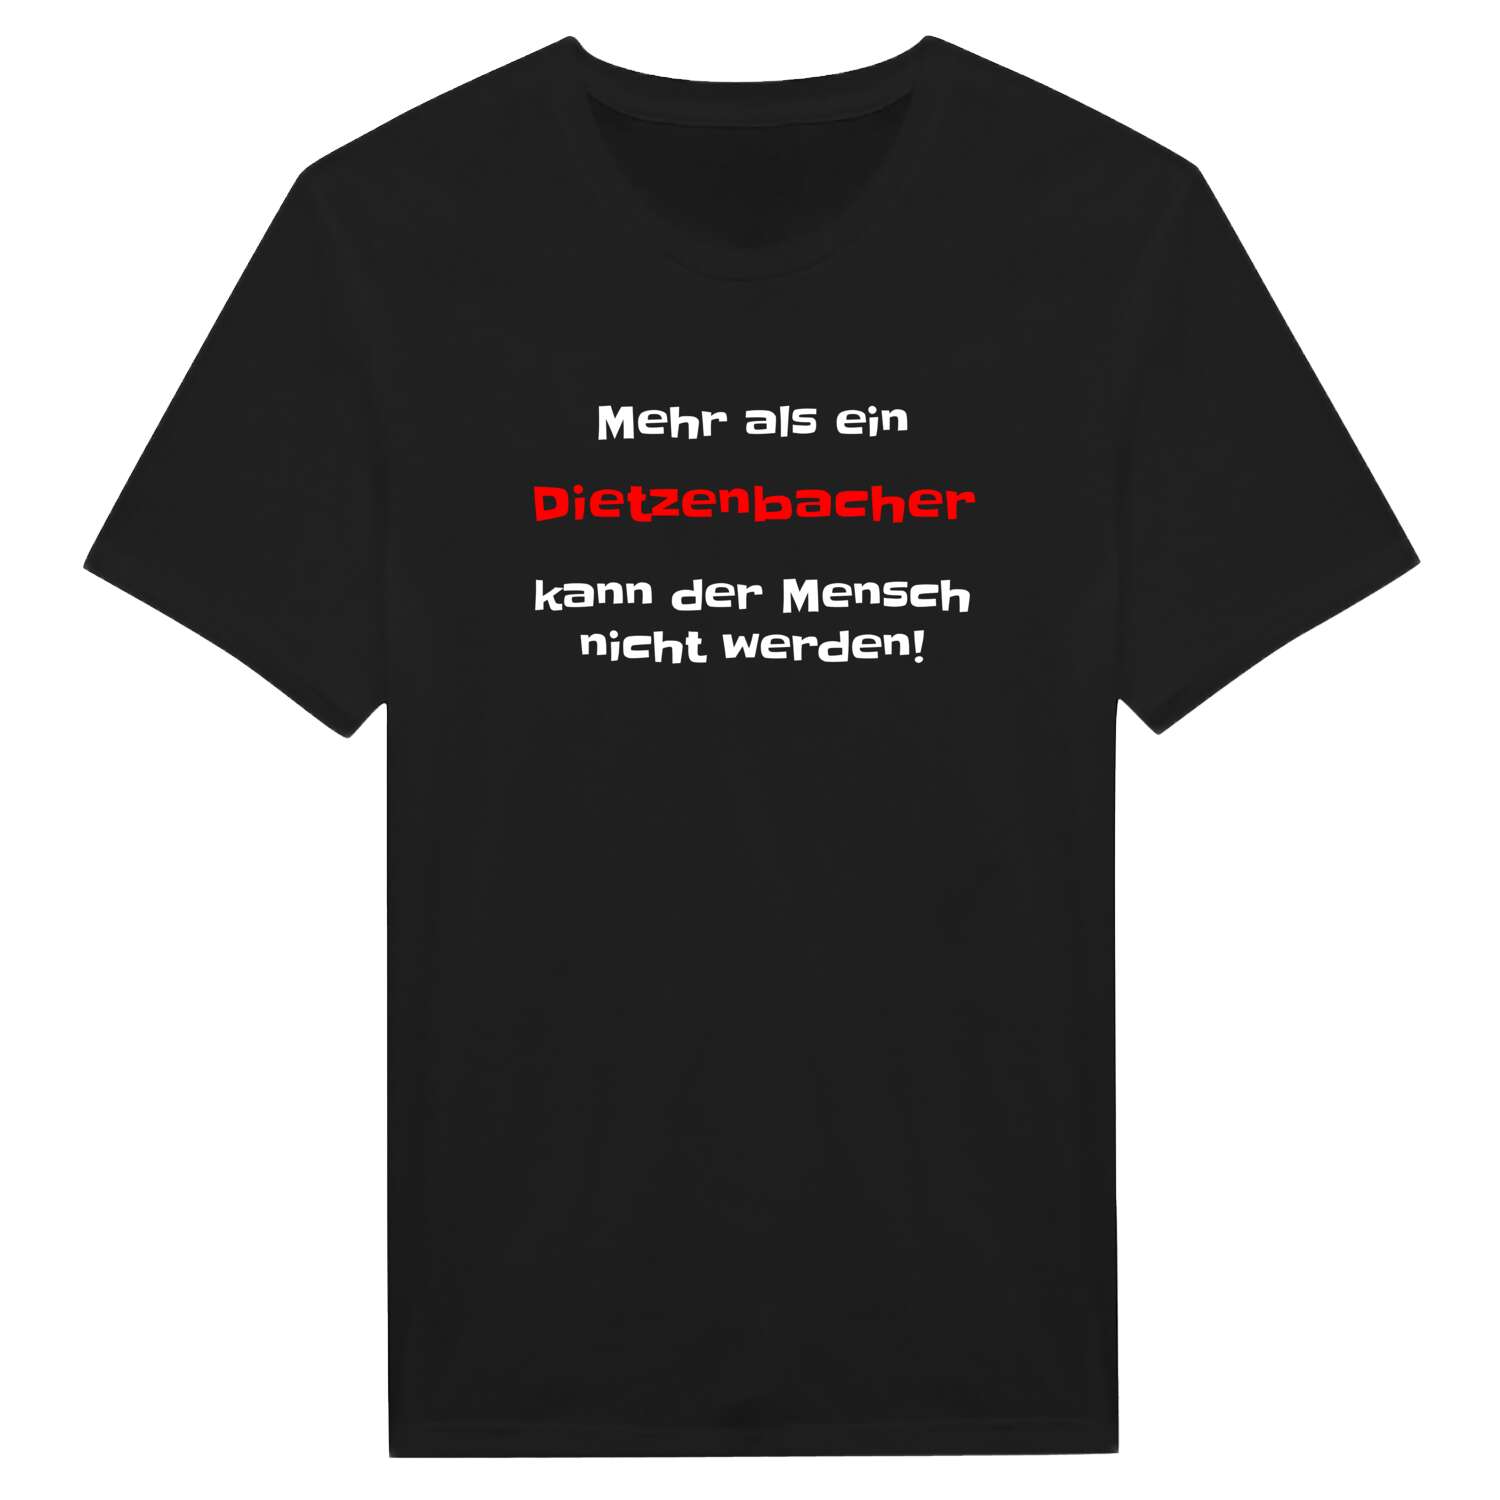 Dietzenbach T-Shirt »Mehr als ein«